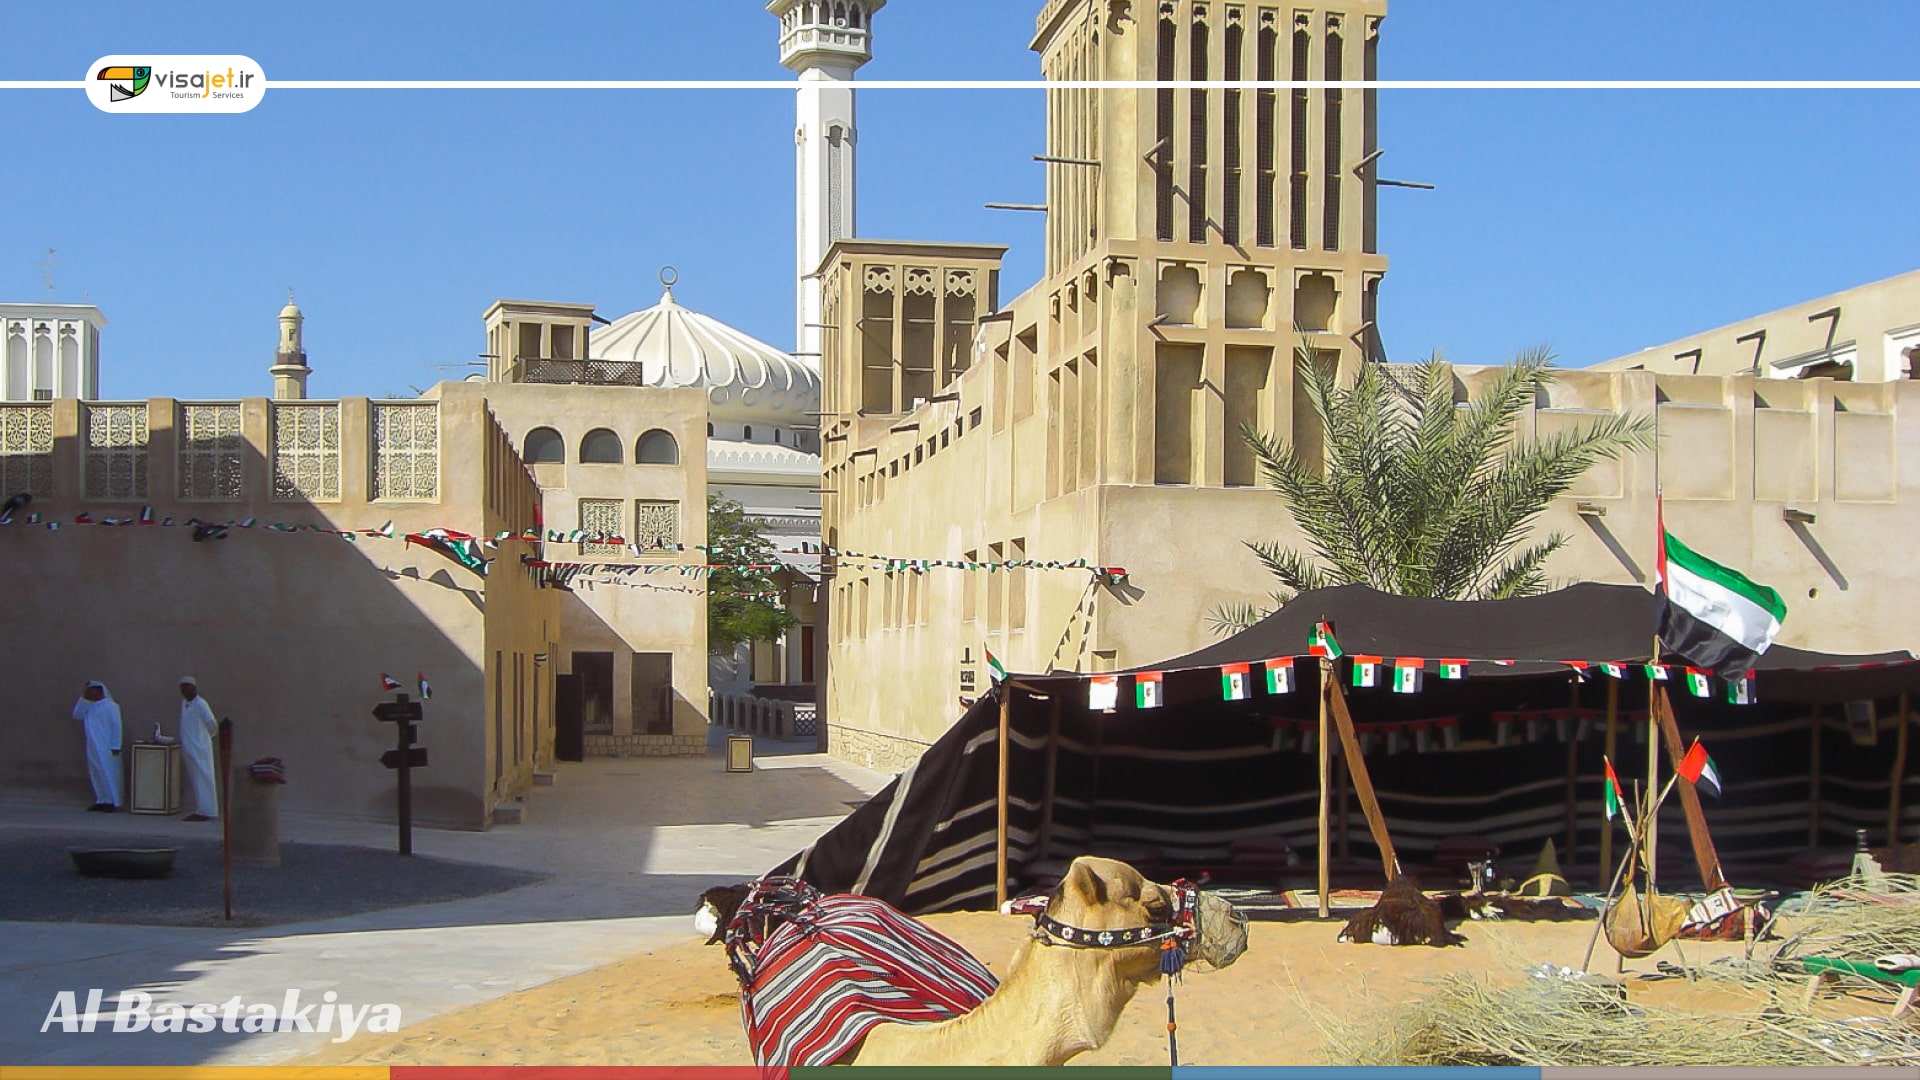 سایت توریستی Al Bastakiya ؛ سفری به دل تاریخ دبی